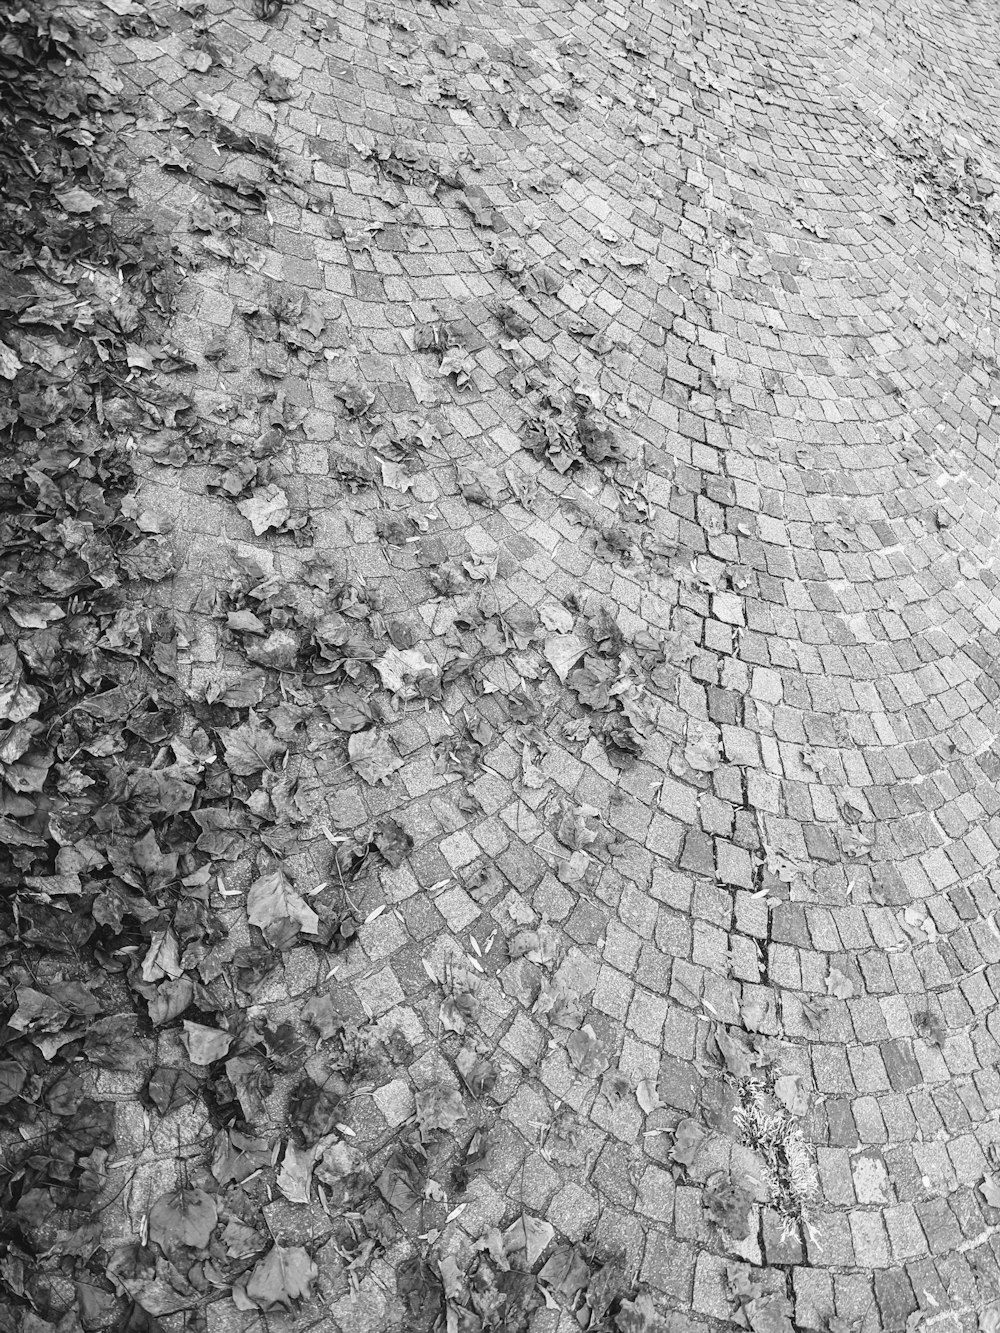 a black and white photo of a cobblestone road